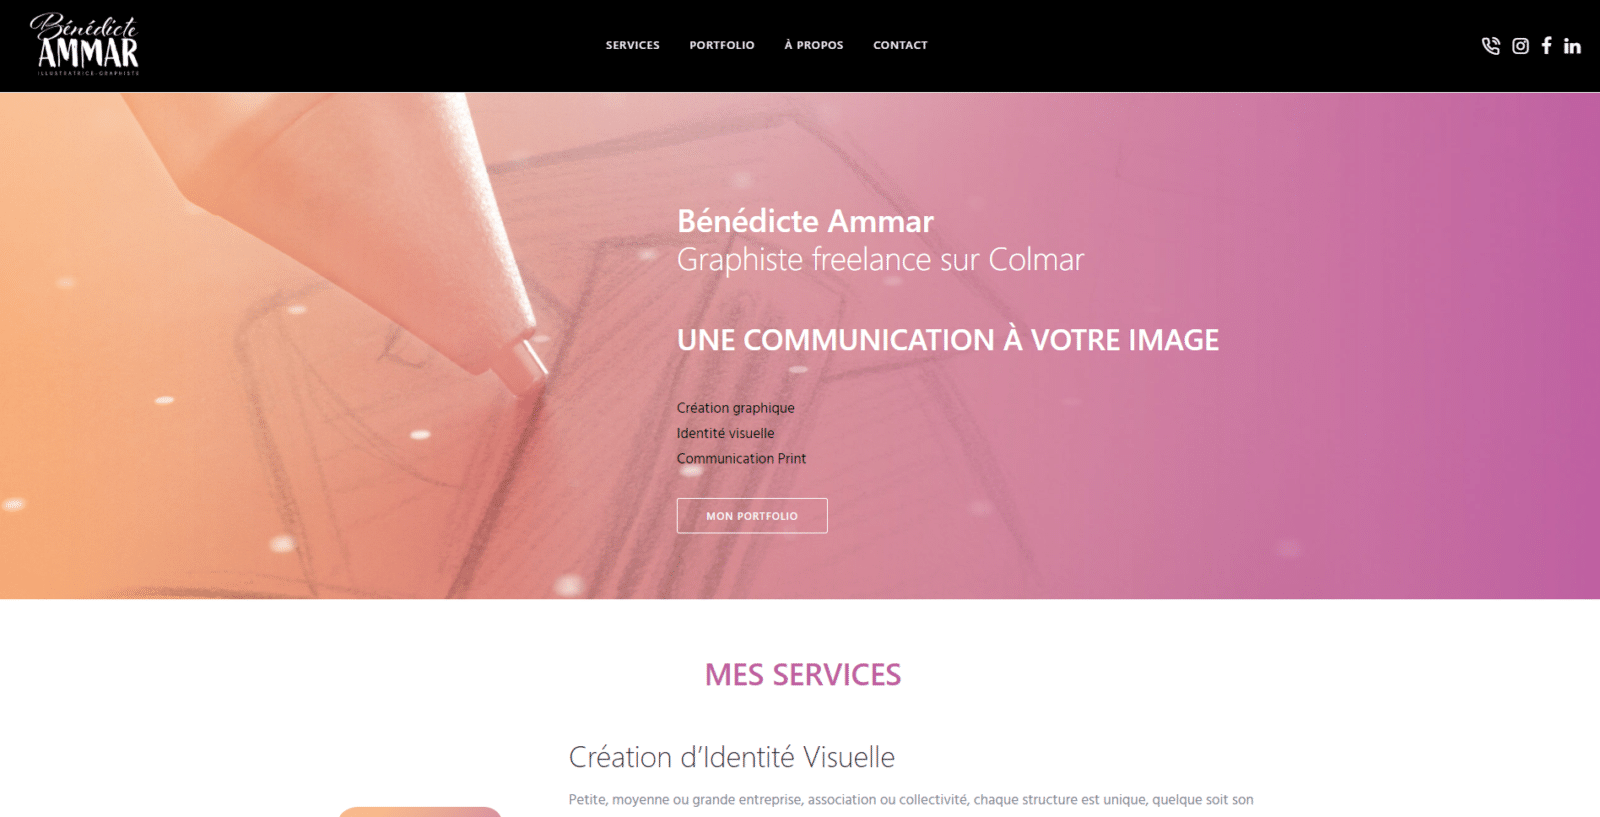 Benedicte ammar est une cliente de l'agence web Karedess, agence web situé à Mulhouse